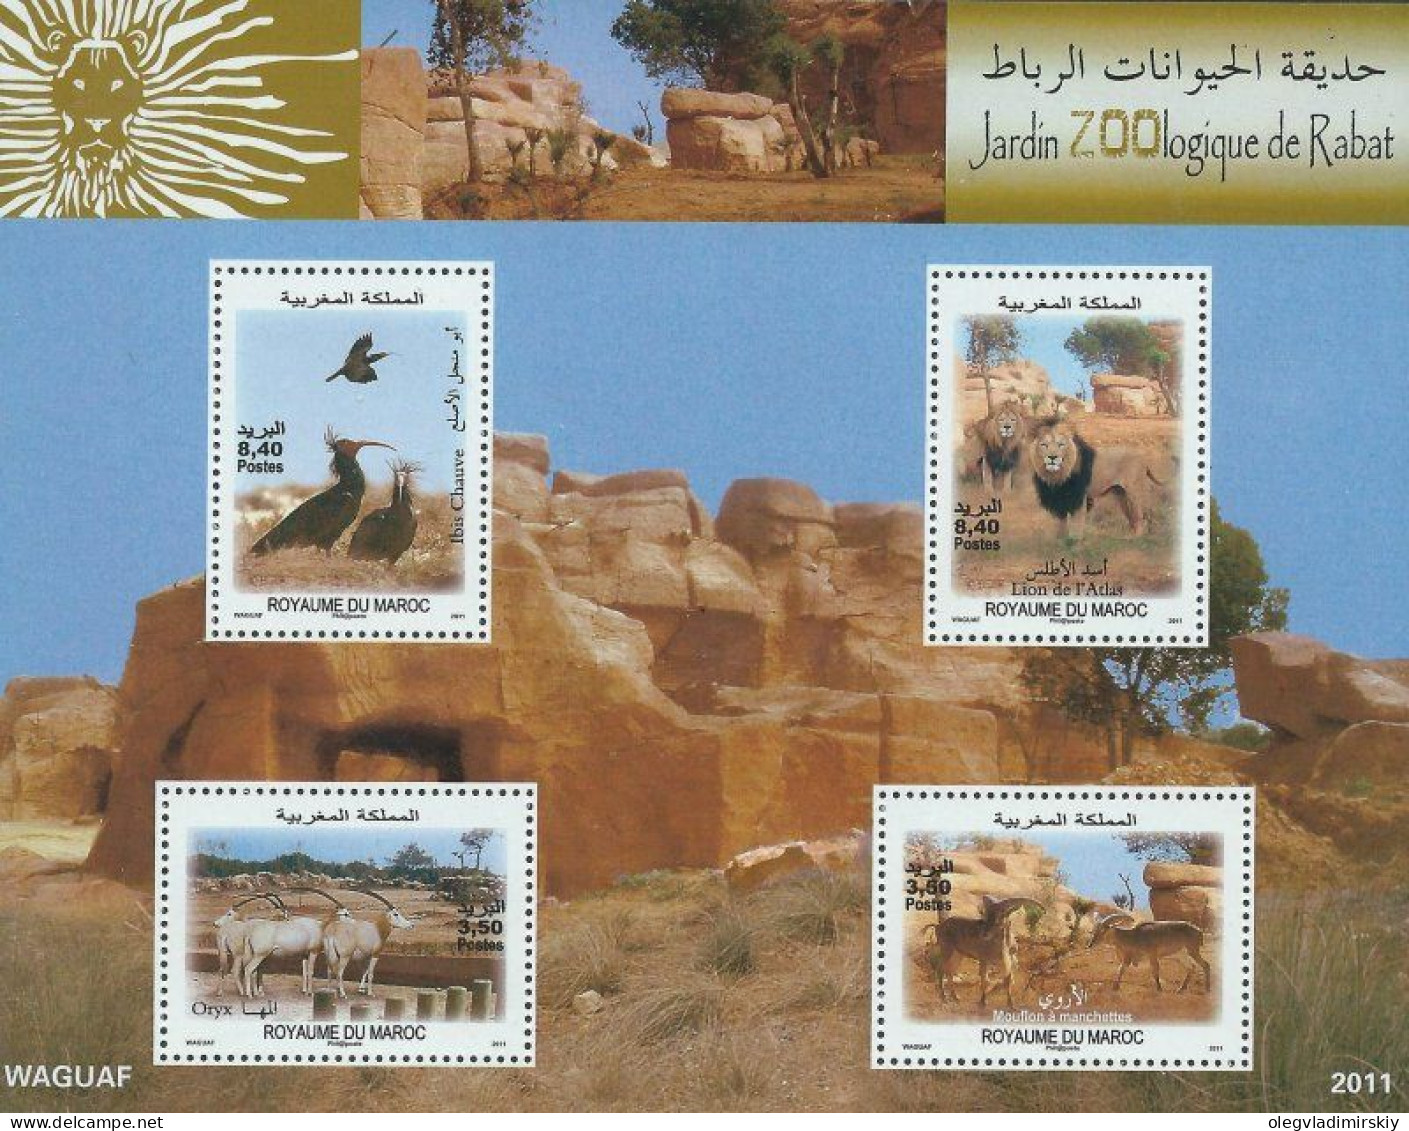 Morocco Maroc Marokko 2012 Rabat Zoo Lions Birds Artiodactyls Set Of 4 Stamps In Block MNH - Raubkatzen